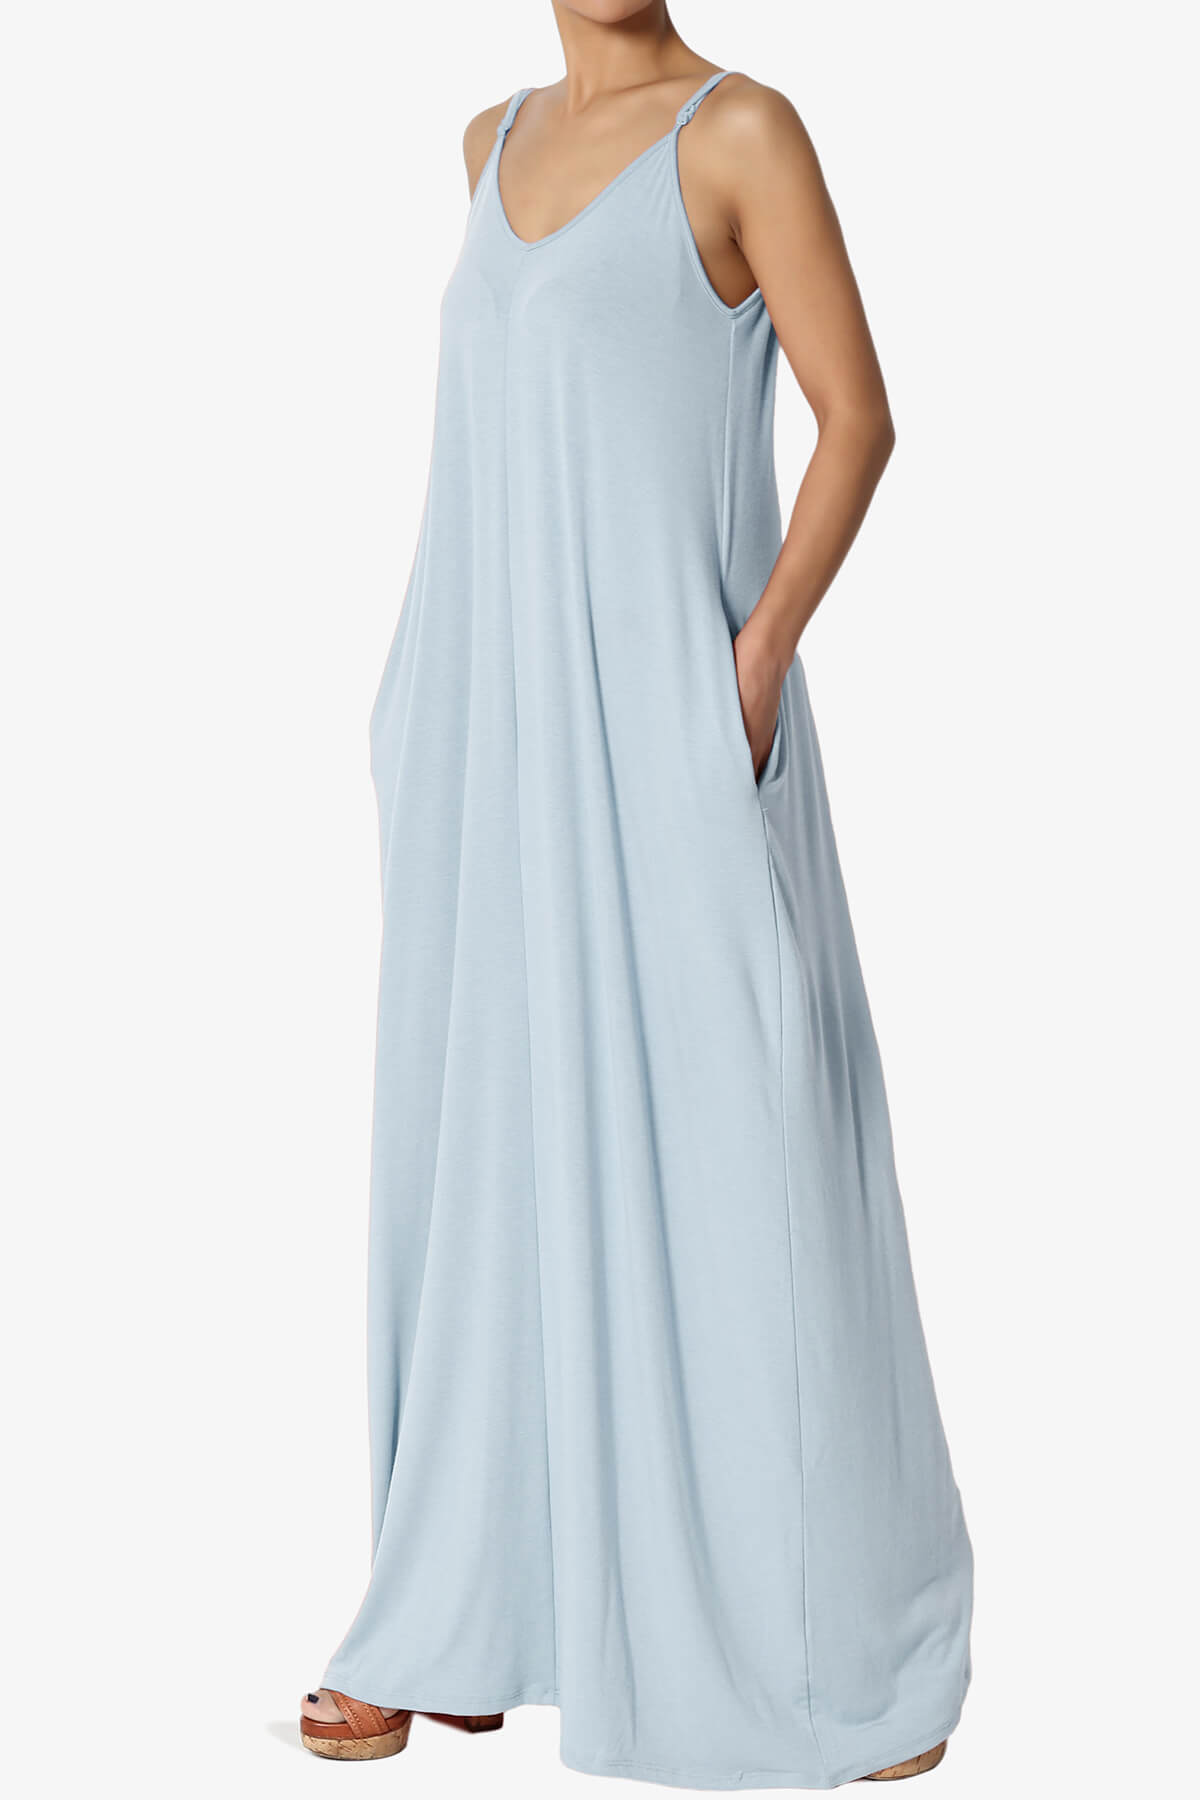 Venus Pocket Cami Maxi Dress ASH BLUE_3